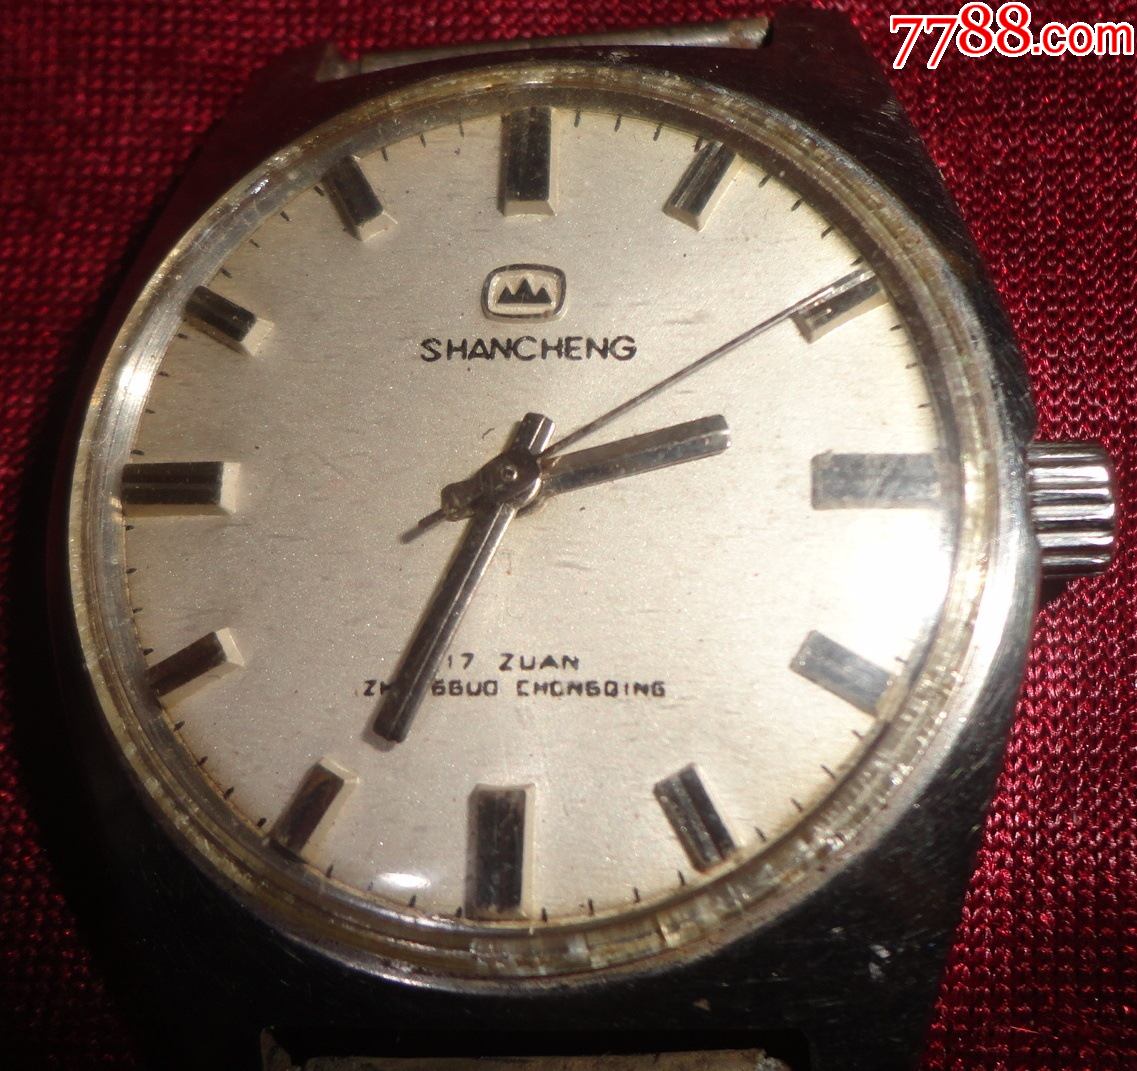 重庆钟表厂早期产大号山城牌手表稀少1